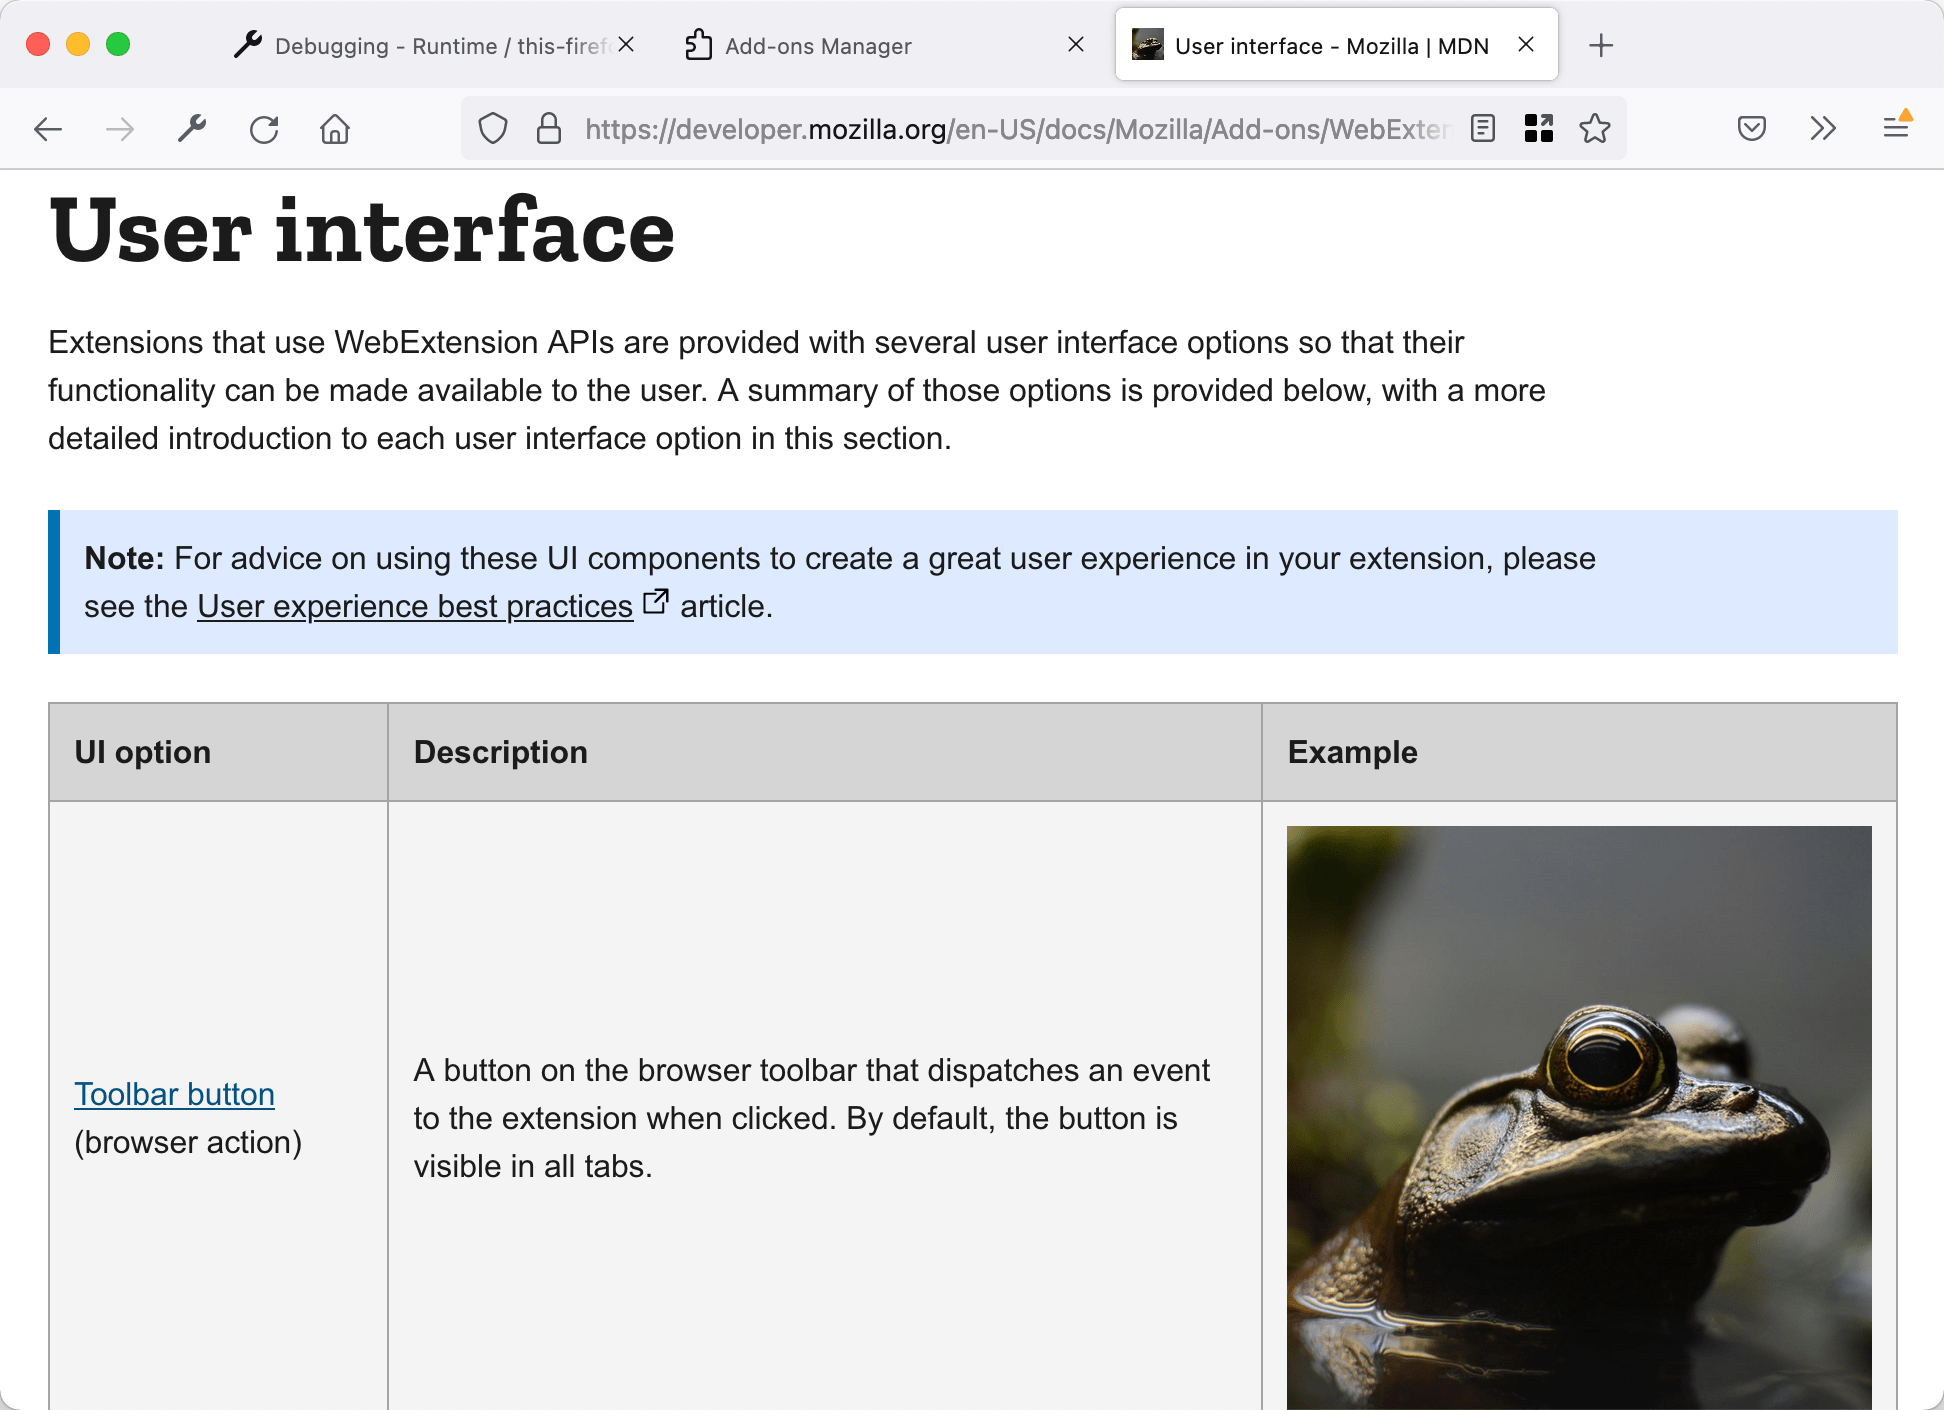 Les images sur la page ont été remplacées par une image de grenouille